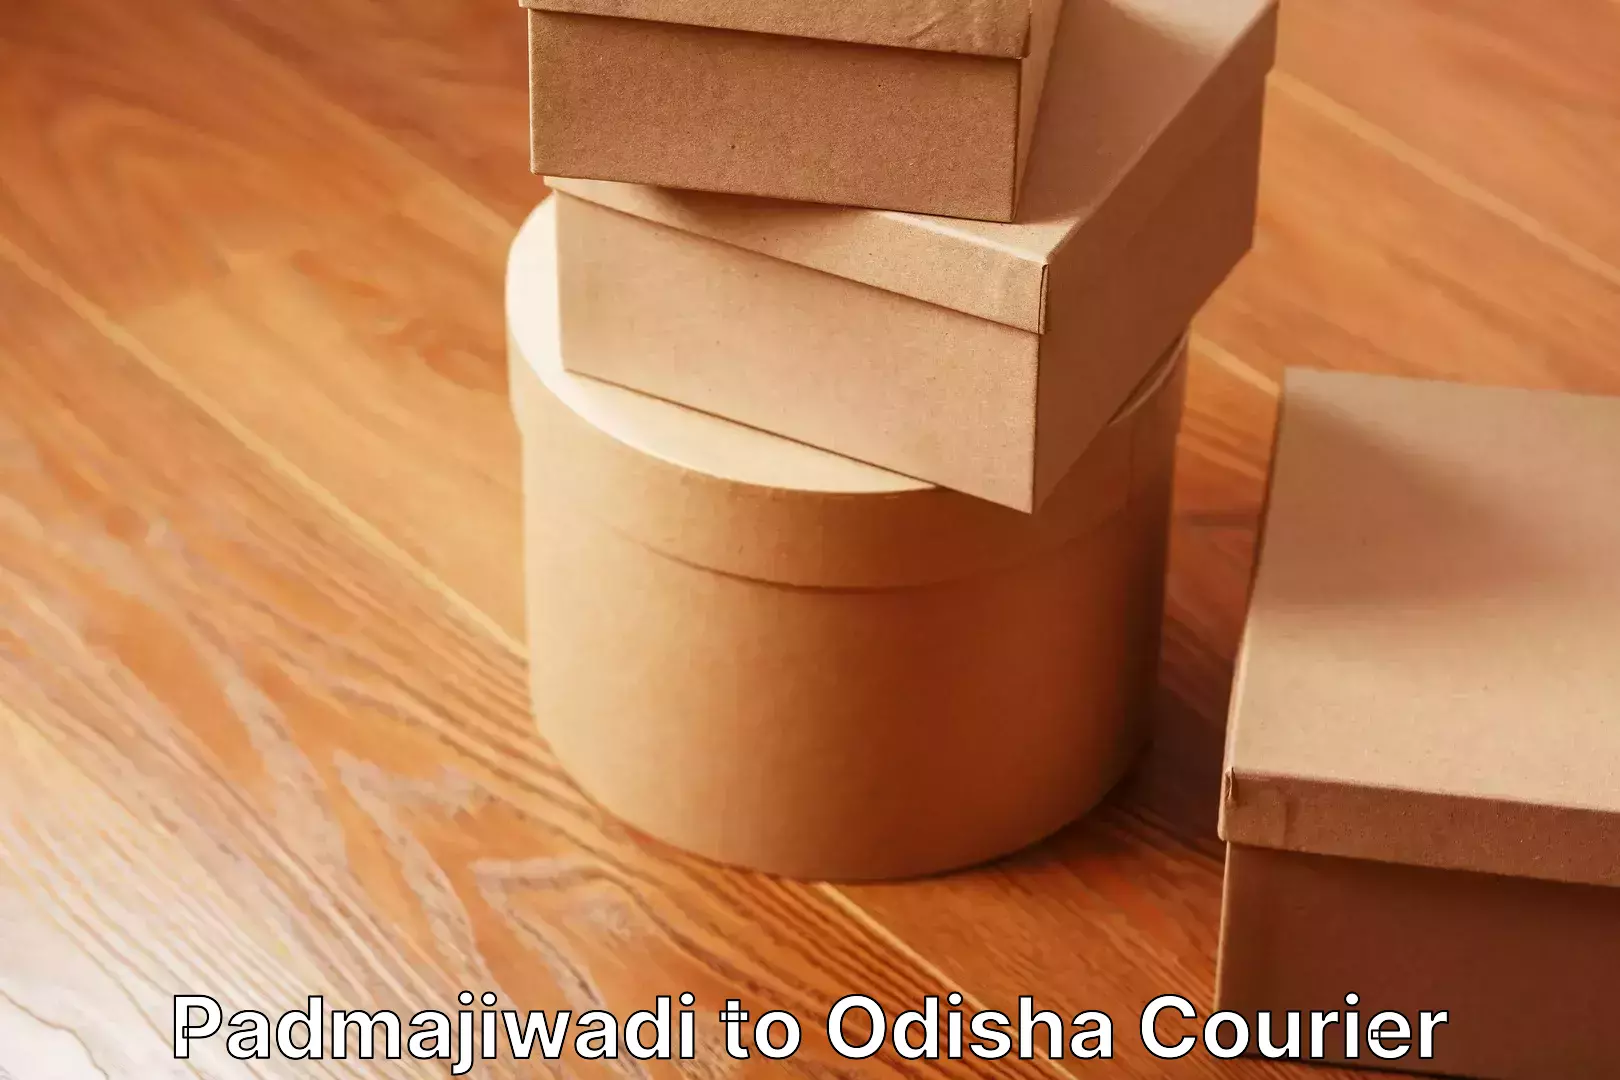 Furniture relocation experts Padmajiwadi to Odisha